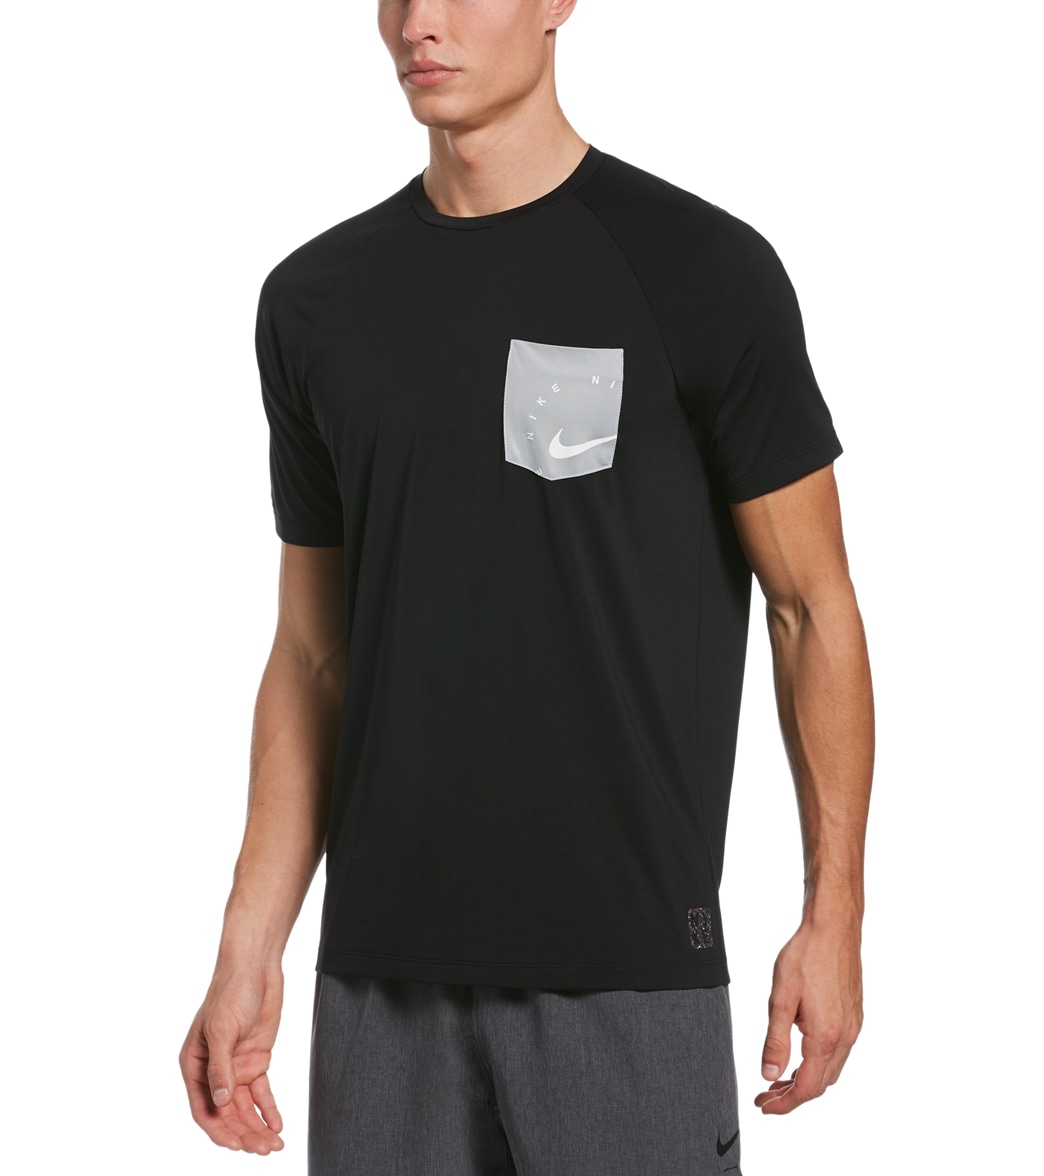 Nike Men's Logo Short Sleeve Hydro Rashguard Shirt - Black Small - Swimoutlet.com